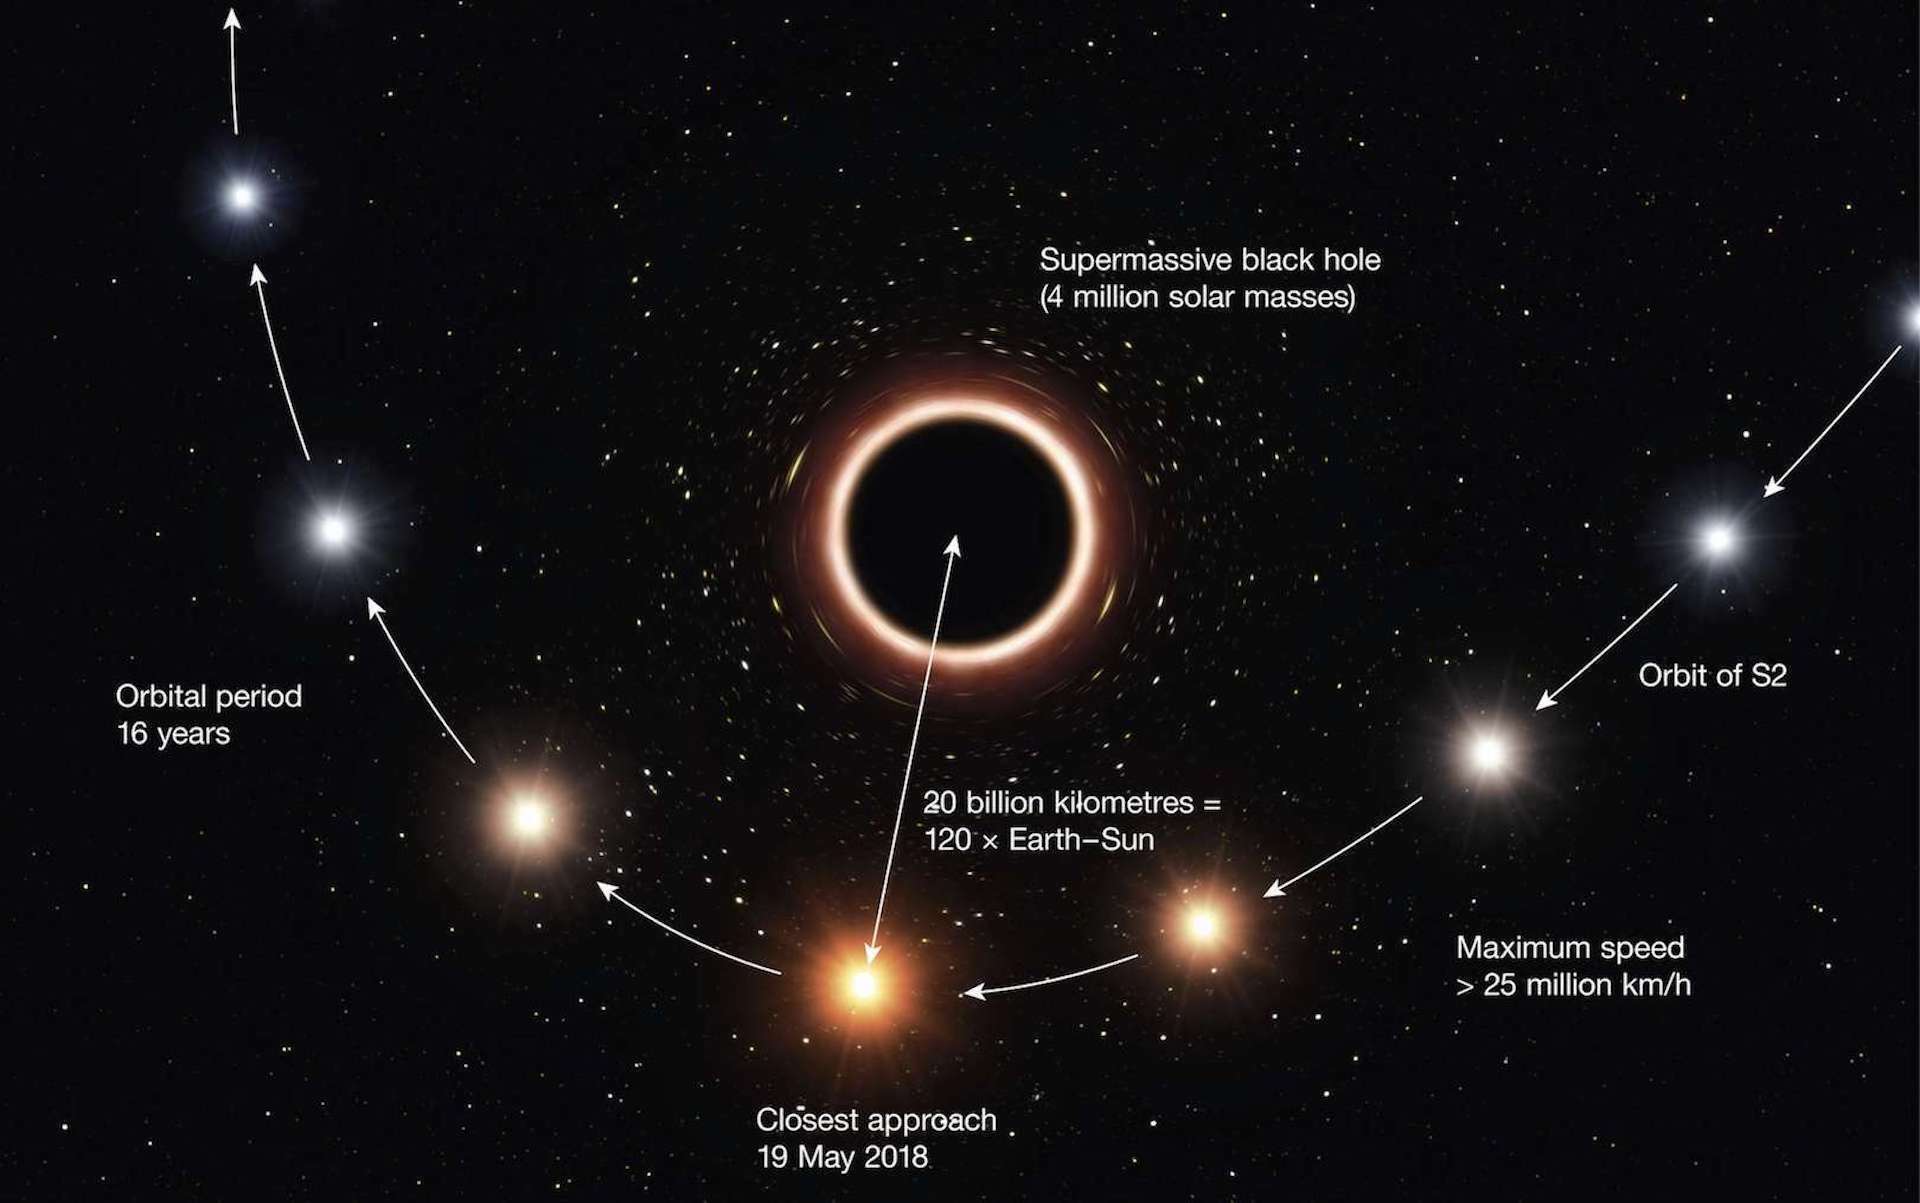 Description du passage de l'étoile S2 au plus proche du trou noir supermassif Sagittarius A* au cours de son orbite de 16 ans autour de cet objet. L'étude de S2 a conduit à la détermination la plus précise de la distance nous séparant du trou noir, ainsi que de sa masse. © ESO, M. Kornmesser